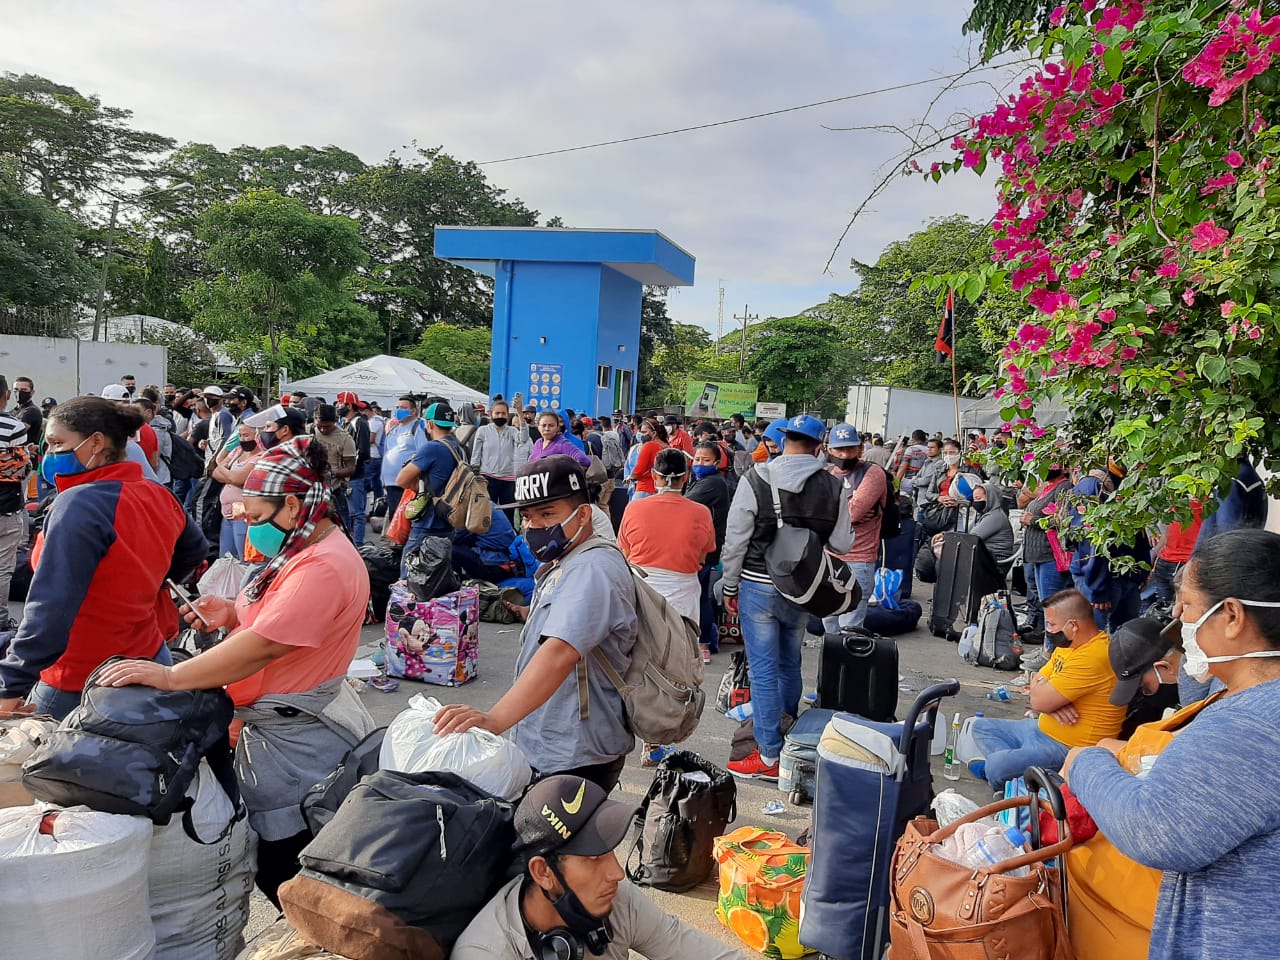 Nicaragüenses varados en Peñas Blancas siguen su calvario esperando que les permitan ingresar al país. Foto: Artículo 66